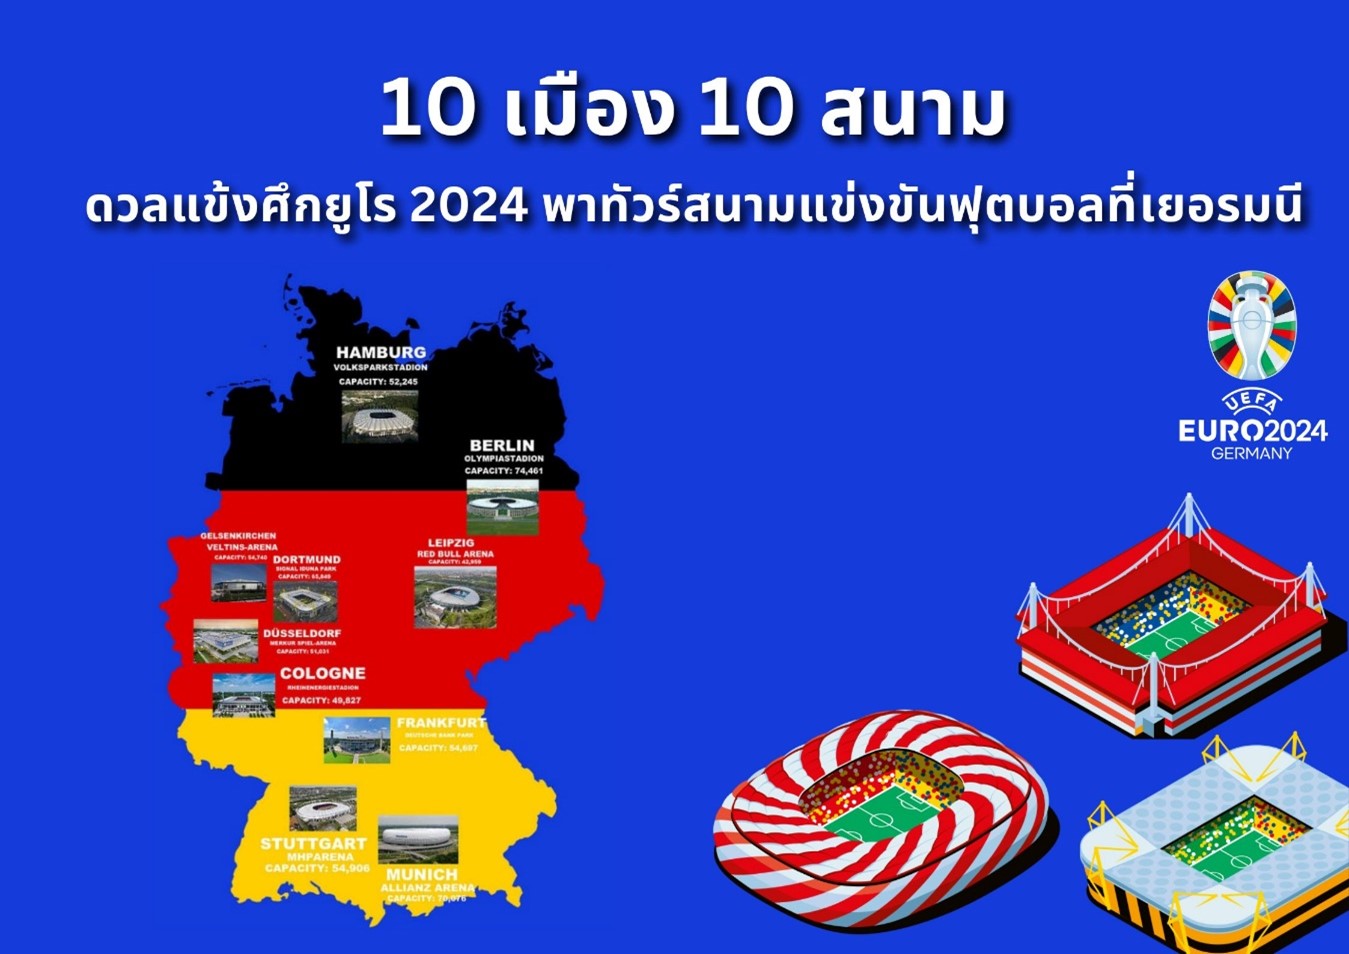 ยูโร 2024 พาทัวร์สนามแข่งขันฟุตบอลเยอรมนี 10 เมือง 10 สนาม